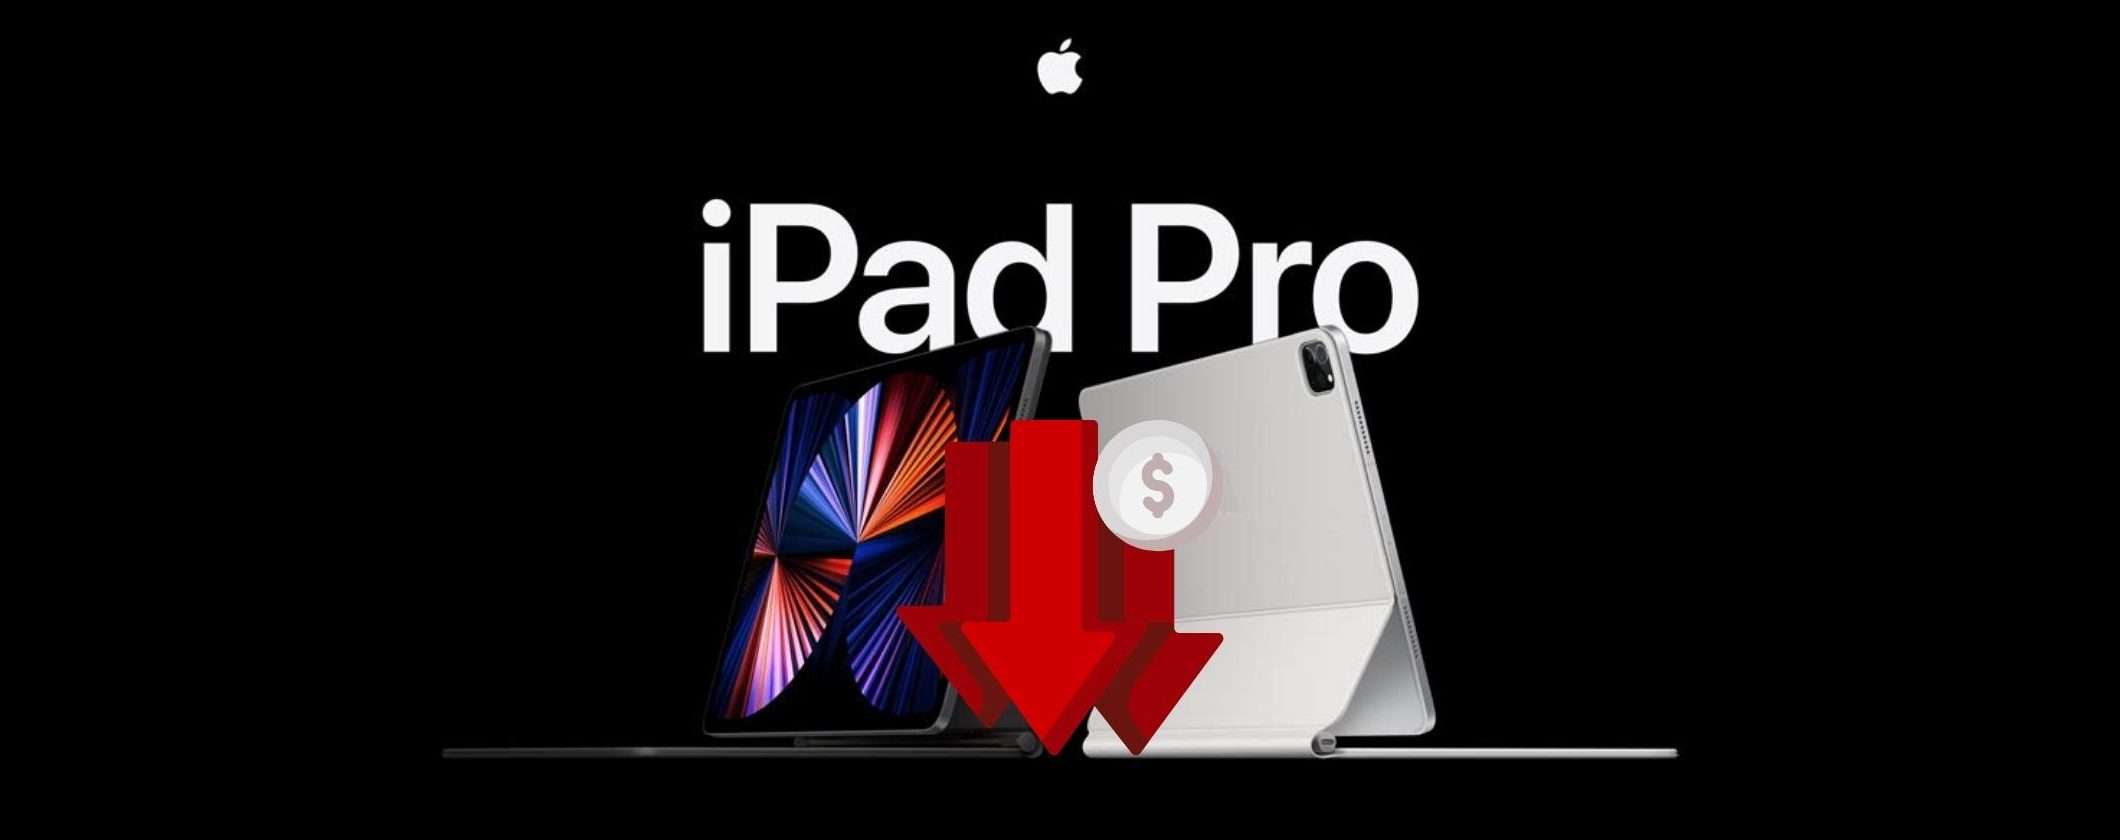 iPad Pro 11: crolla il prezzo su Amazon dopo l'evento Apple